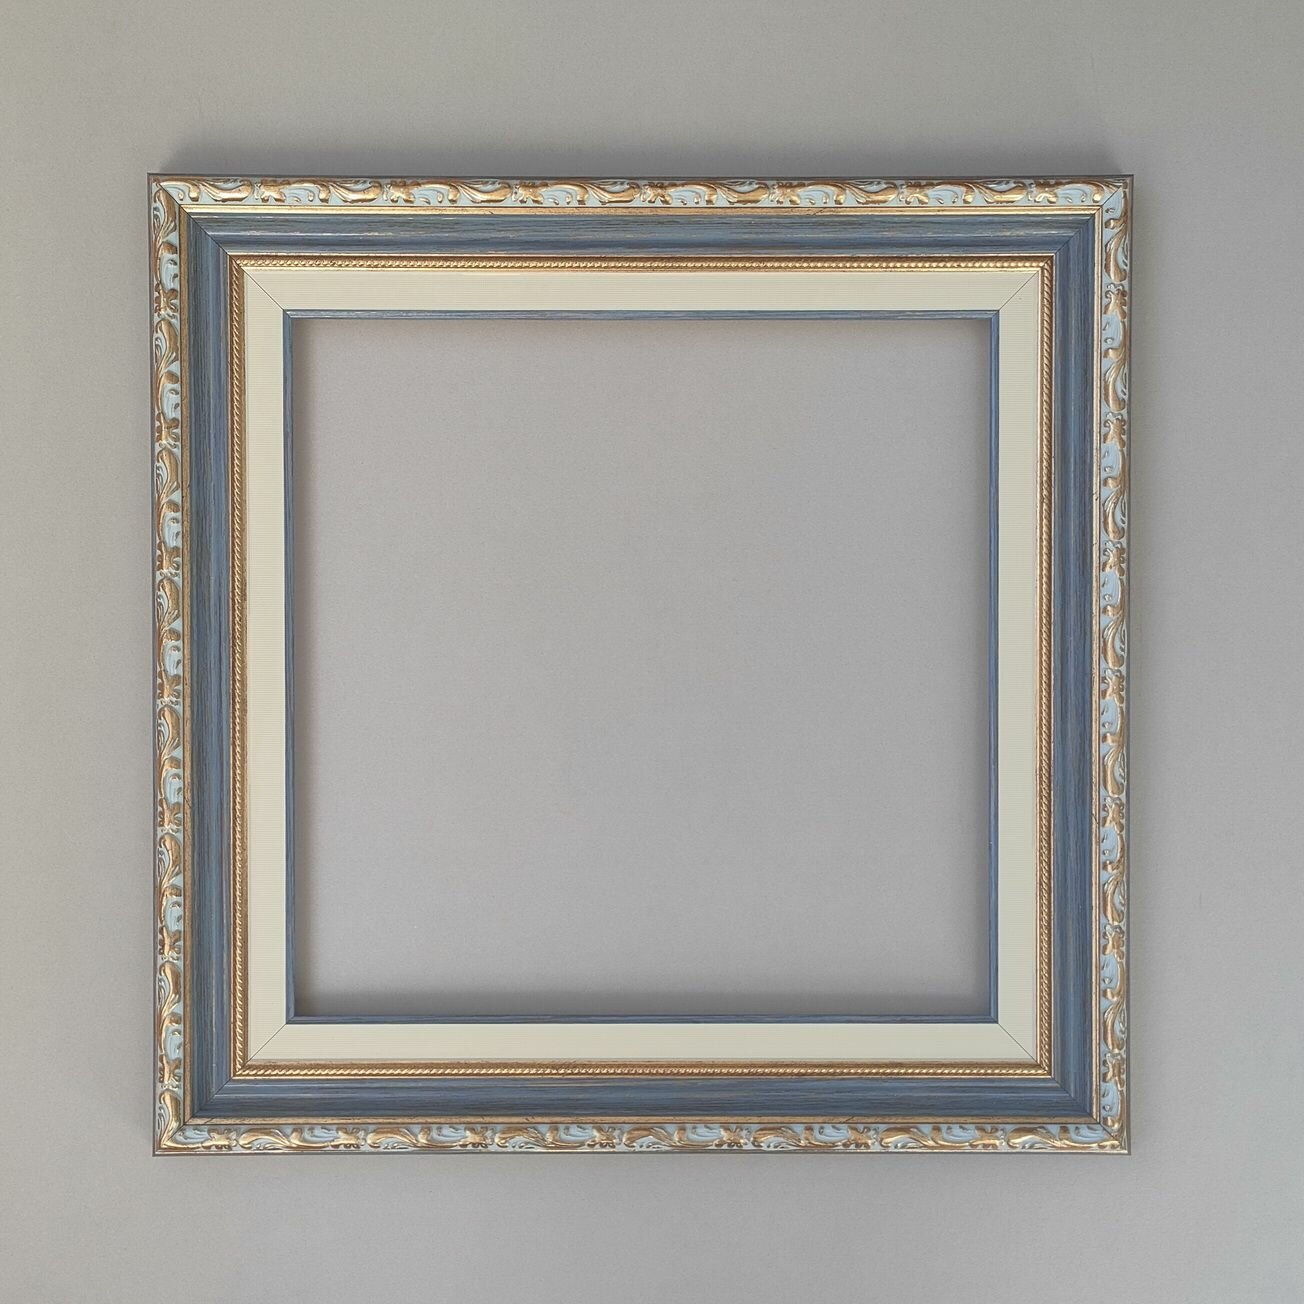 Багетная рама для картин (BR59.77) 25x25 см, цвет: синий, с эффектом паспарту, без стекла и задника